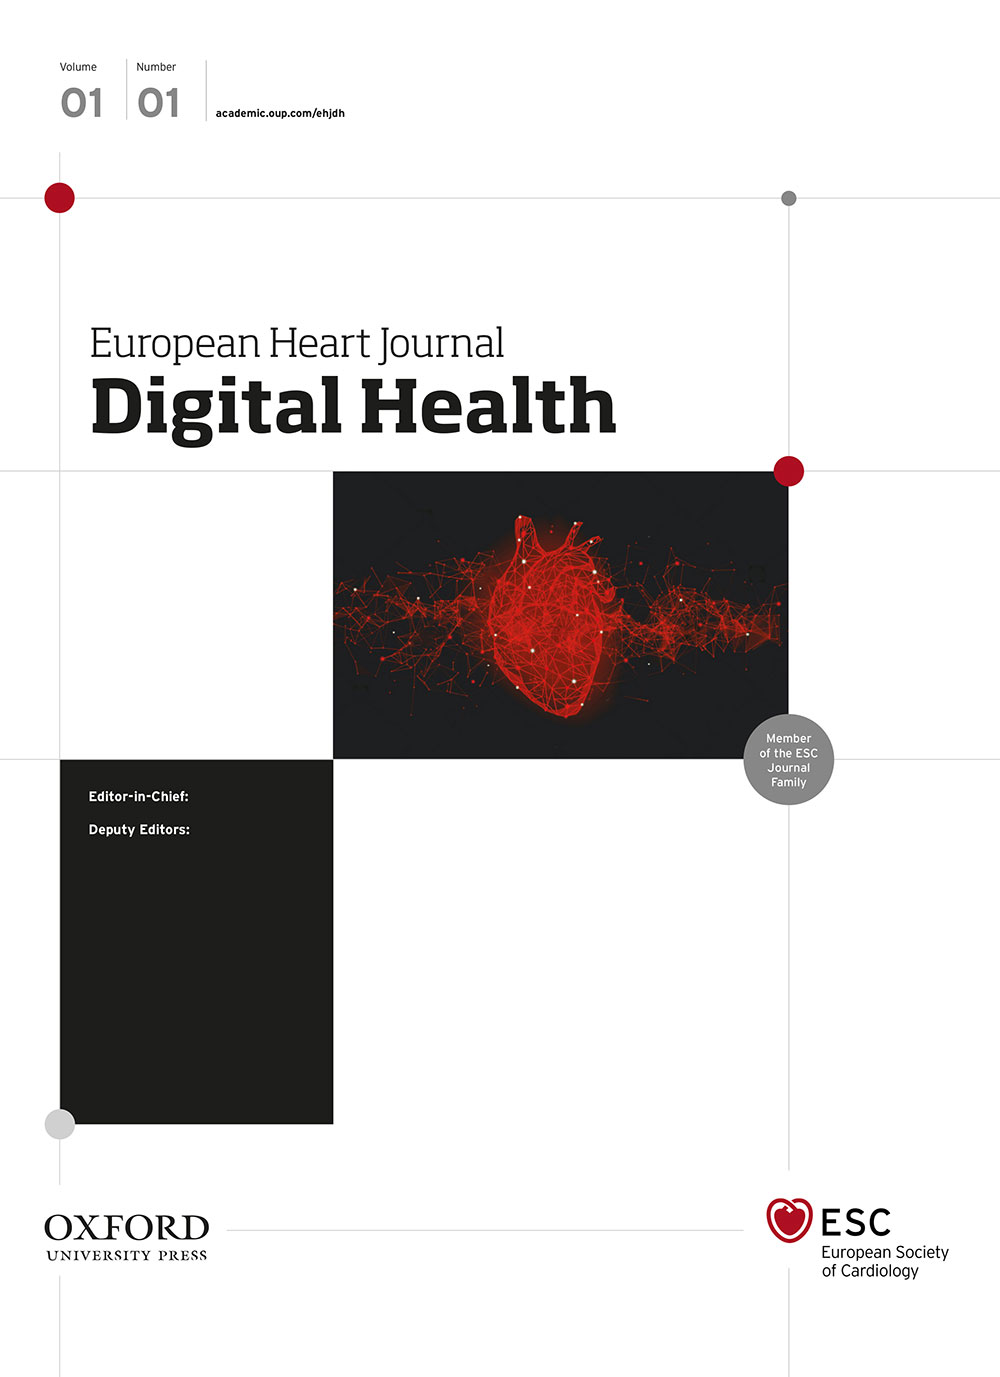 Journal-EHJ-Digital-Health.jpg